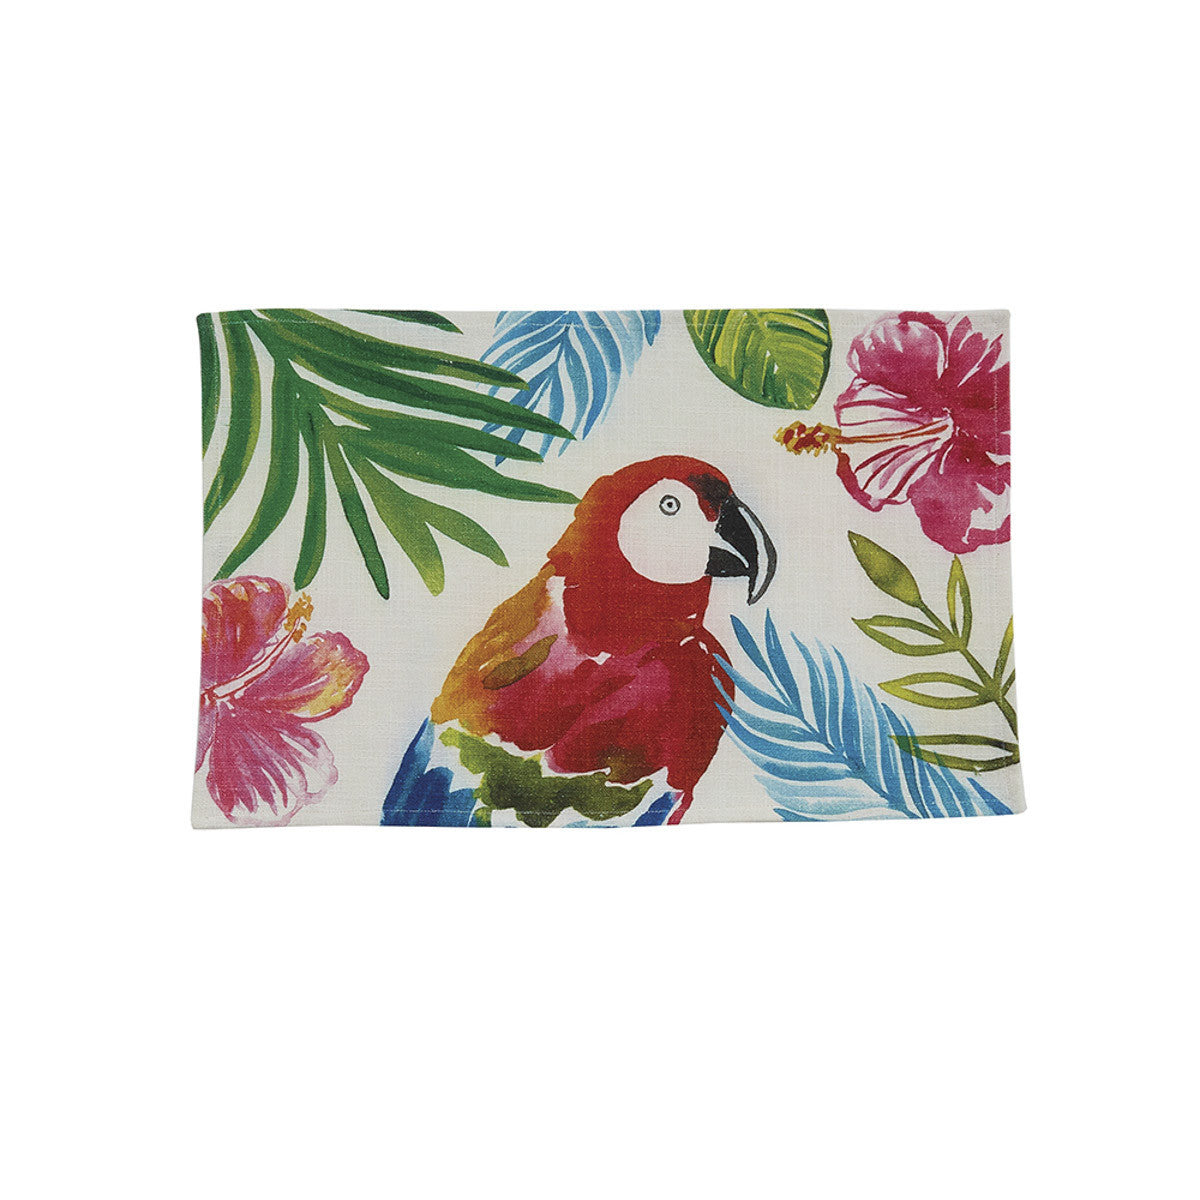 Tropical Paradise Placemat - Parrot Set of 4  Park Designs